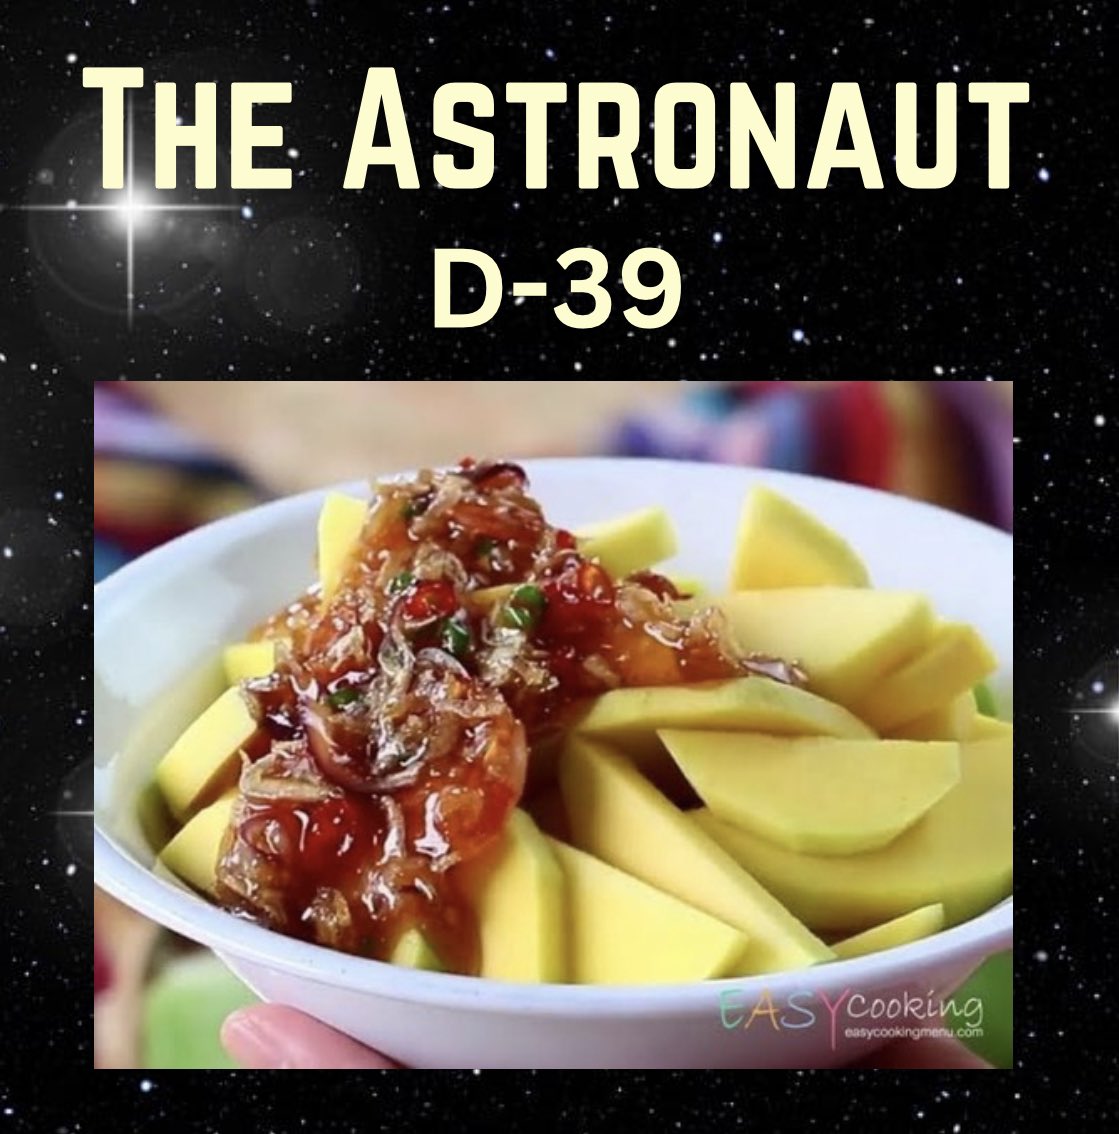 D-39 🧑🏻‍🚀🏡

สวัสดีค่าเหล่านักบิน วันนี้เลข3 แล้วนะคะ มีสปอนผู้ใจดีและน่ารัก สปอนมะม่วงน้ำปลาหวาน 2 ชุด ชุดละ 50 บาท

กติกา 🫡
- สตรีมเพลง The Astronaut 
- แคปหน้าจอ ใส่ลายน้ำ ปิดชื่อ พล หากเป็น พล ห้ามแชร์ 
- เมนชั่นลงใต้โพสต์นี้ พร้อม #พาจินไปจักรวาล #JinTo1B
- เก็บ…